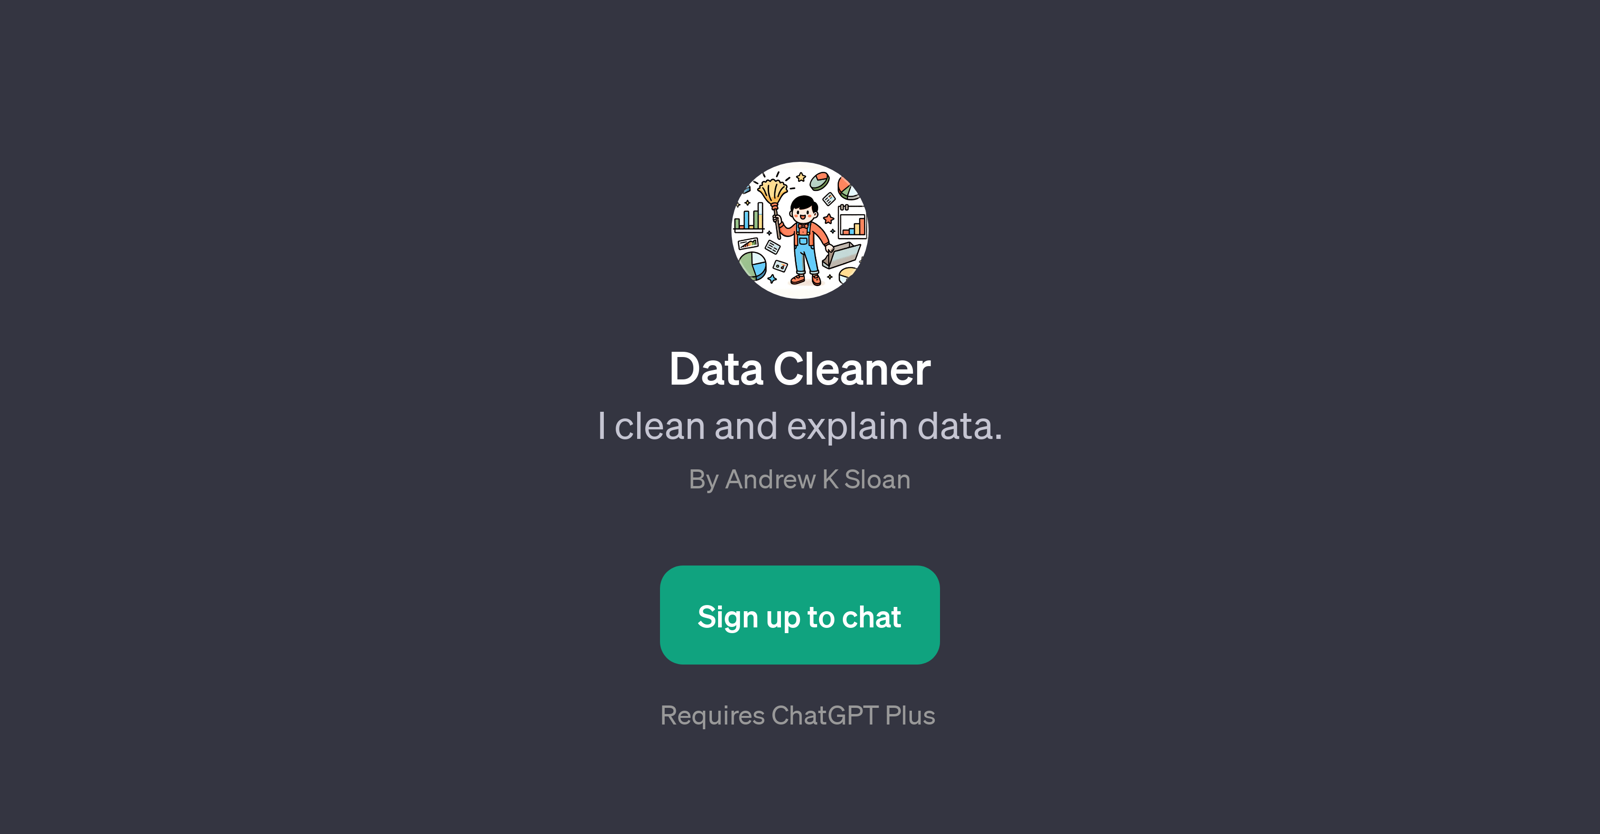 Data Cleaner website